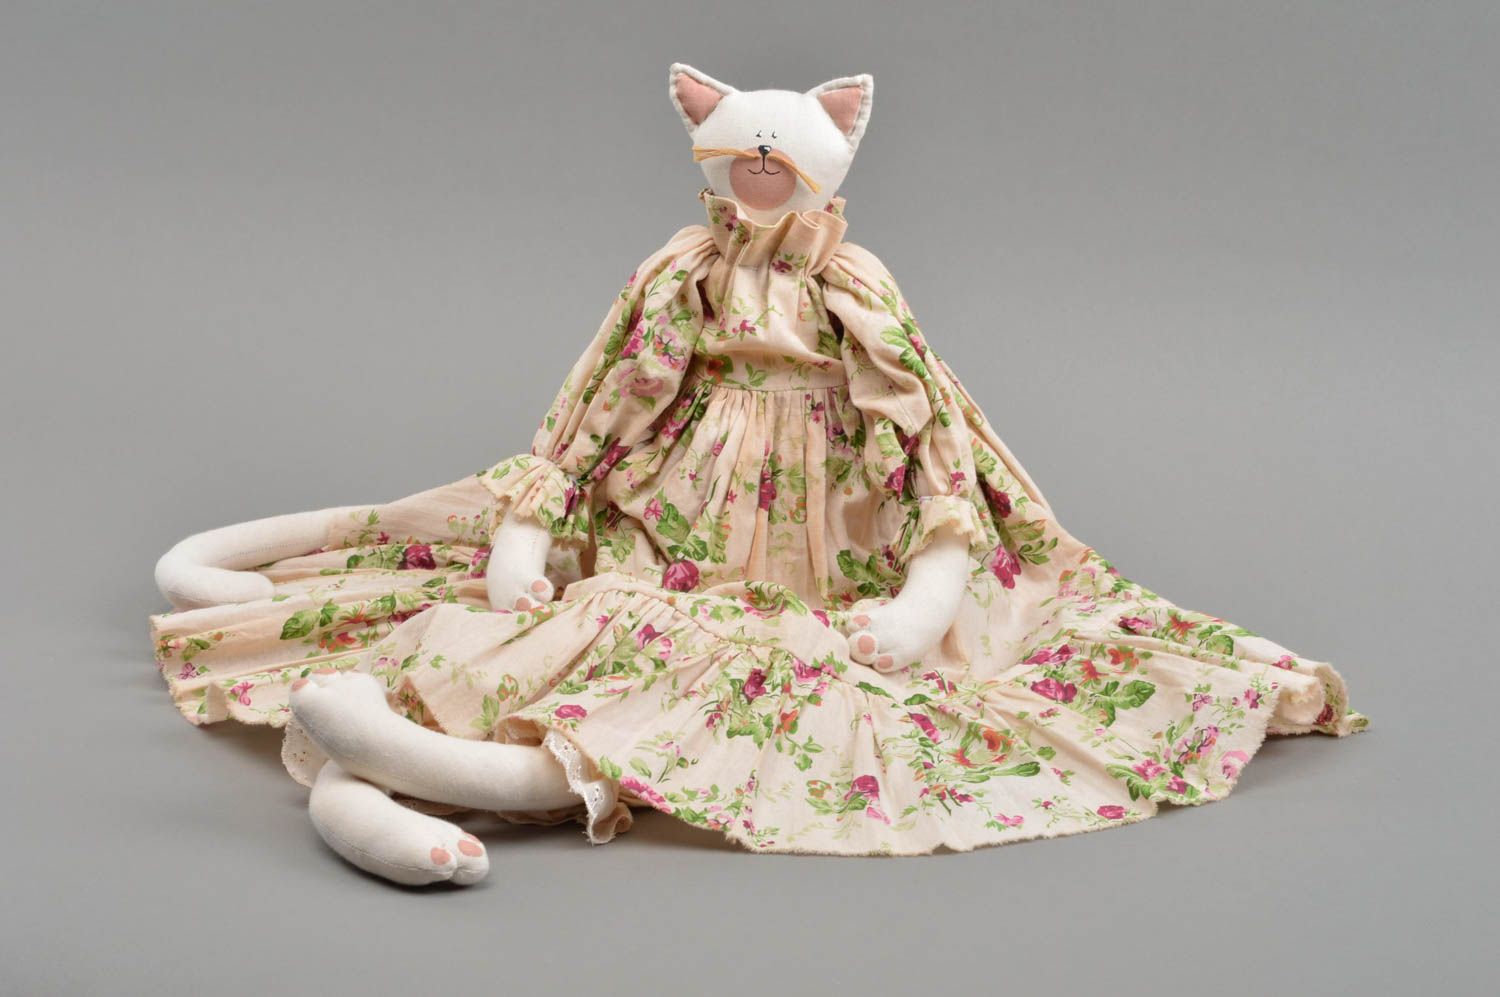 Textil Kuscheltier Katze weiß im blumigen Kleid handmade schön originell foto 3